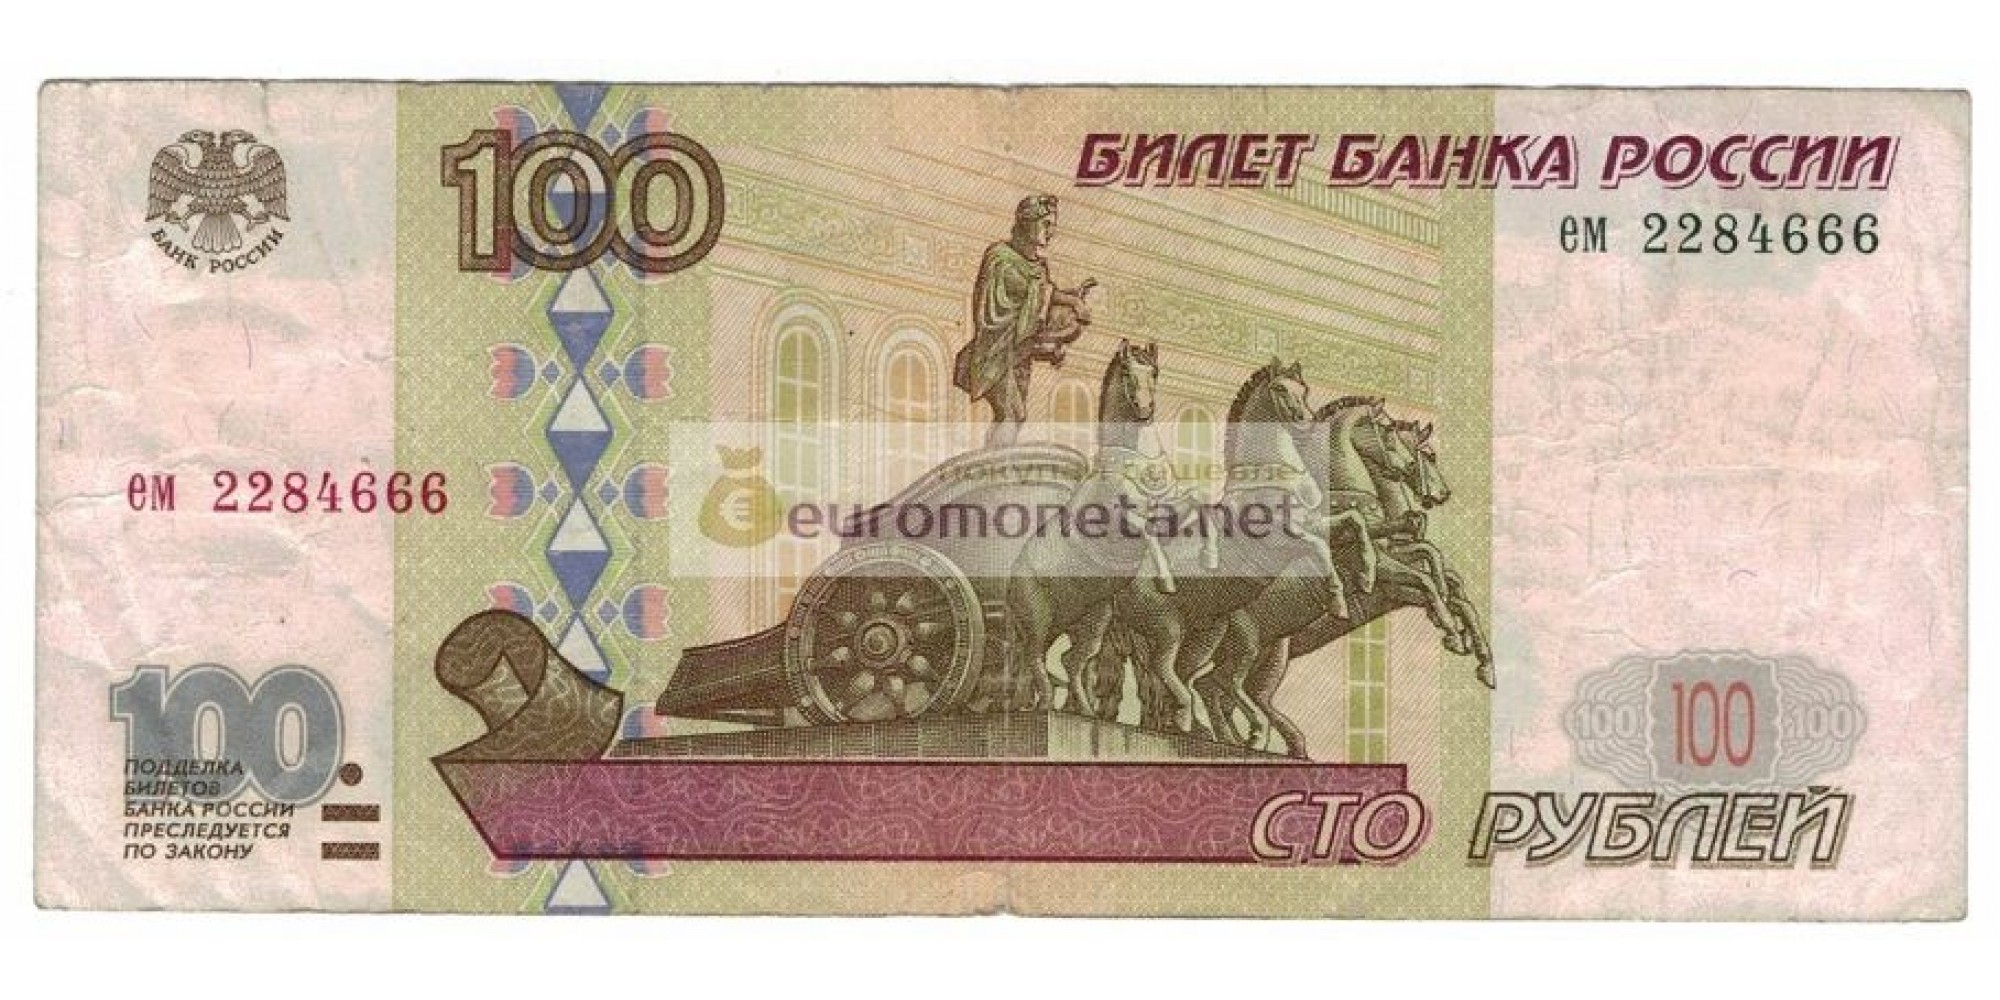 Россия 100 рублей 1997 год без модификации серия ем 2284666